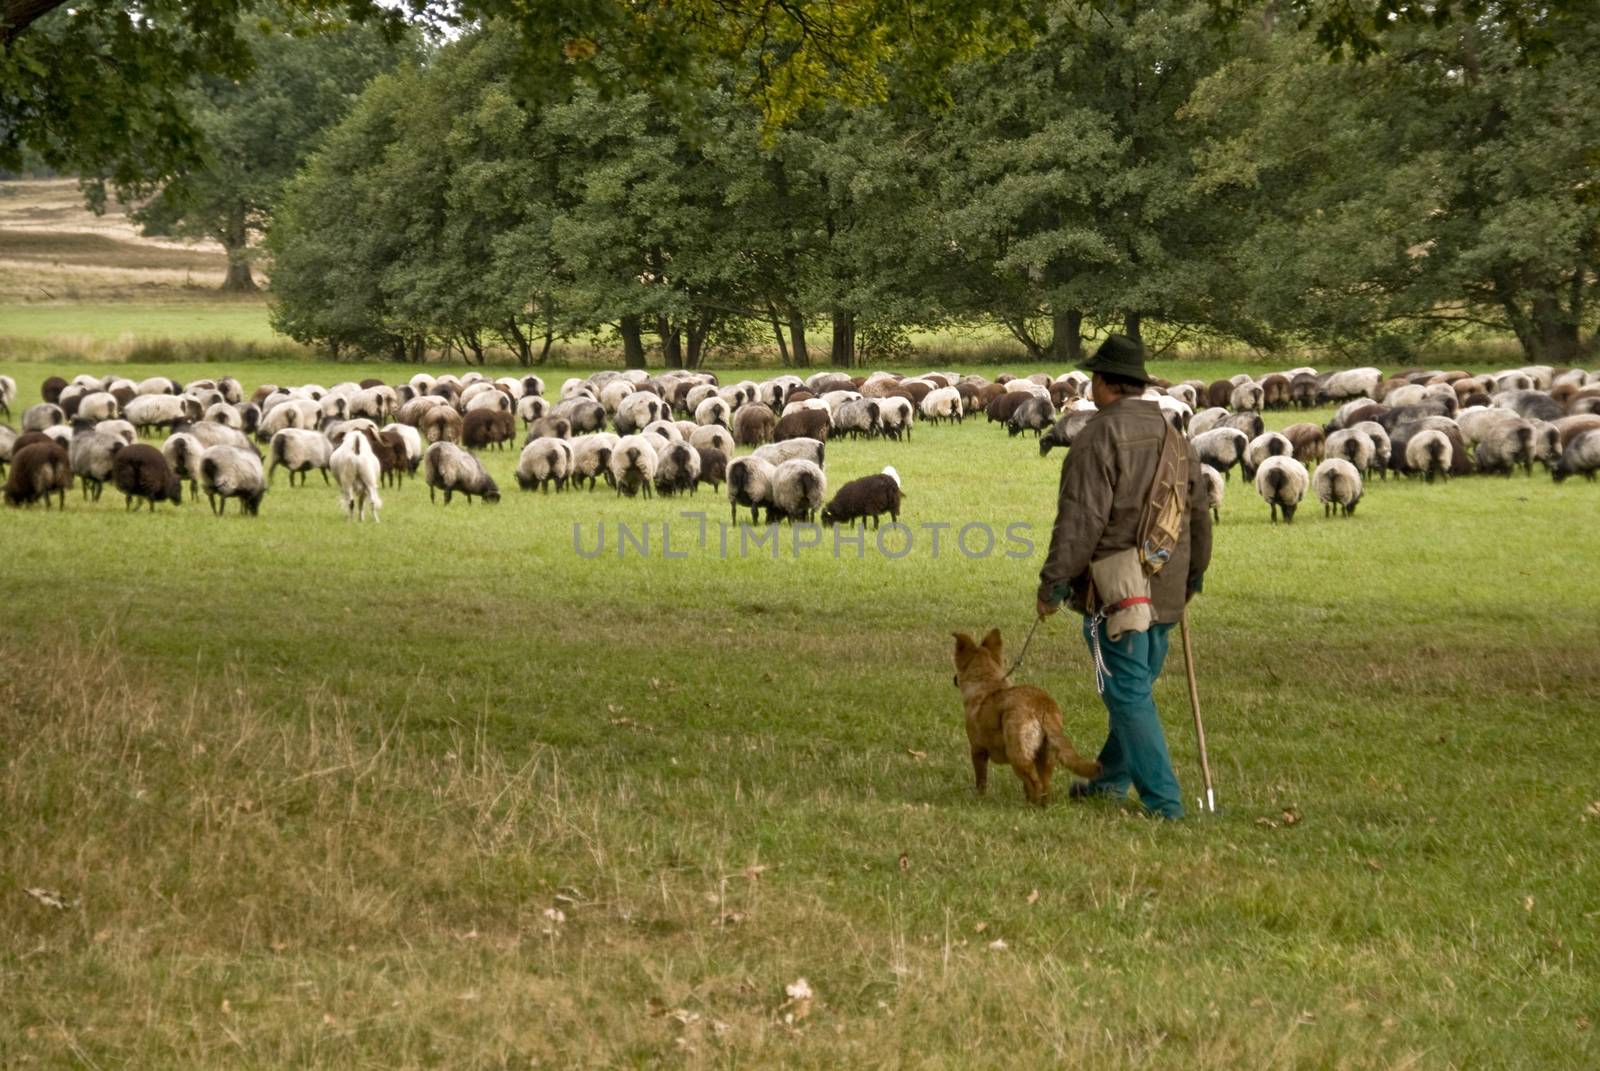 Sheep in Lueneburg Heath